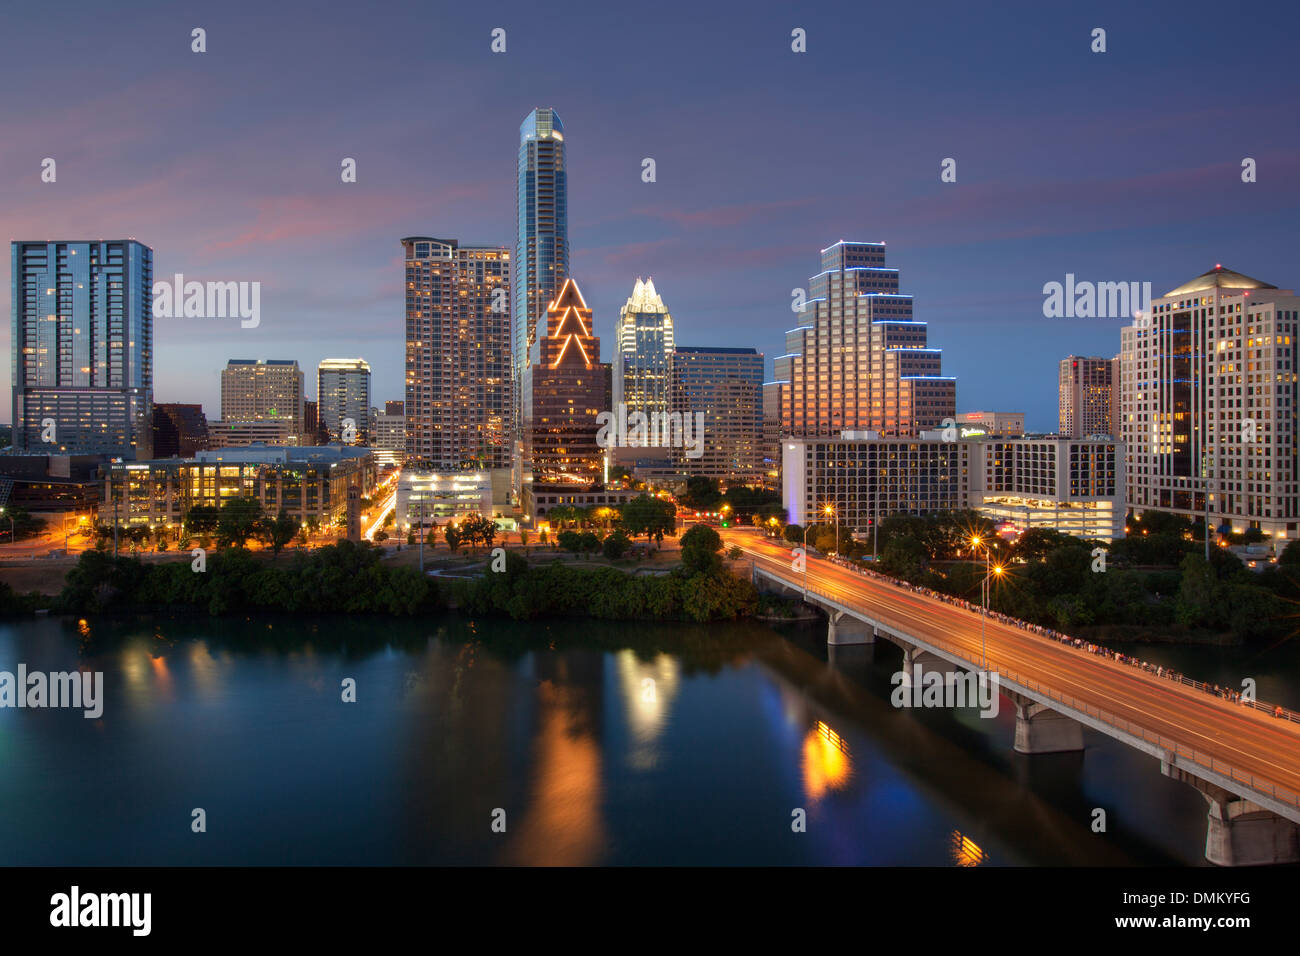 Die Skyline von Austin am Abend erstrahlt im Abendlicht. Die Reflexionen der Hochhäuser spiegeln sich im Wasser. Stockfoto